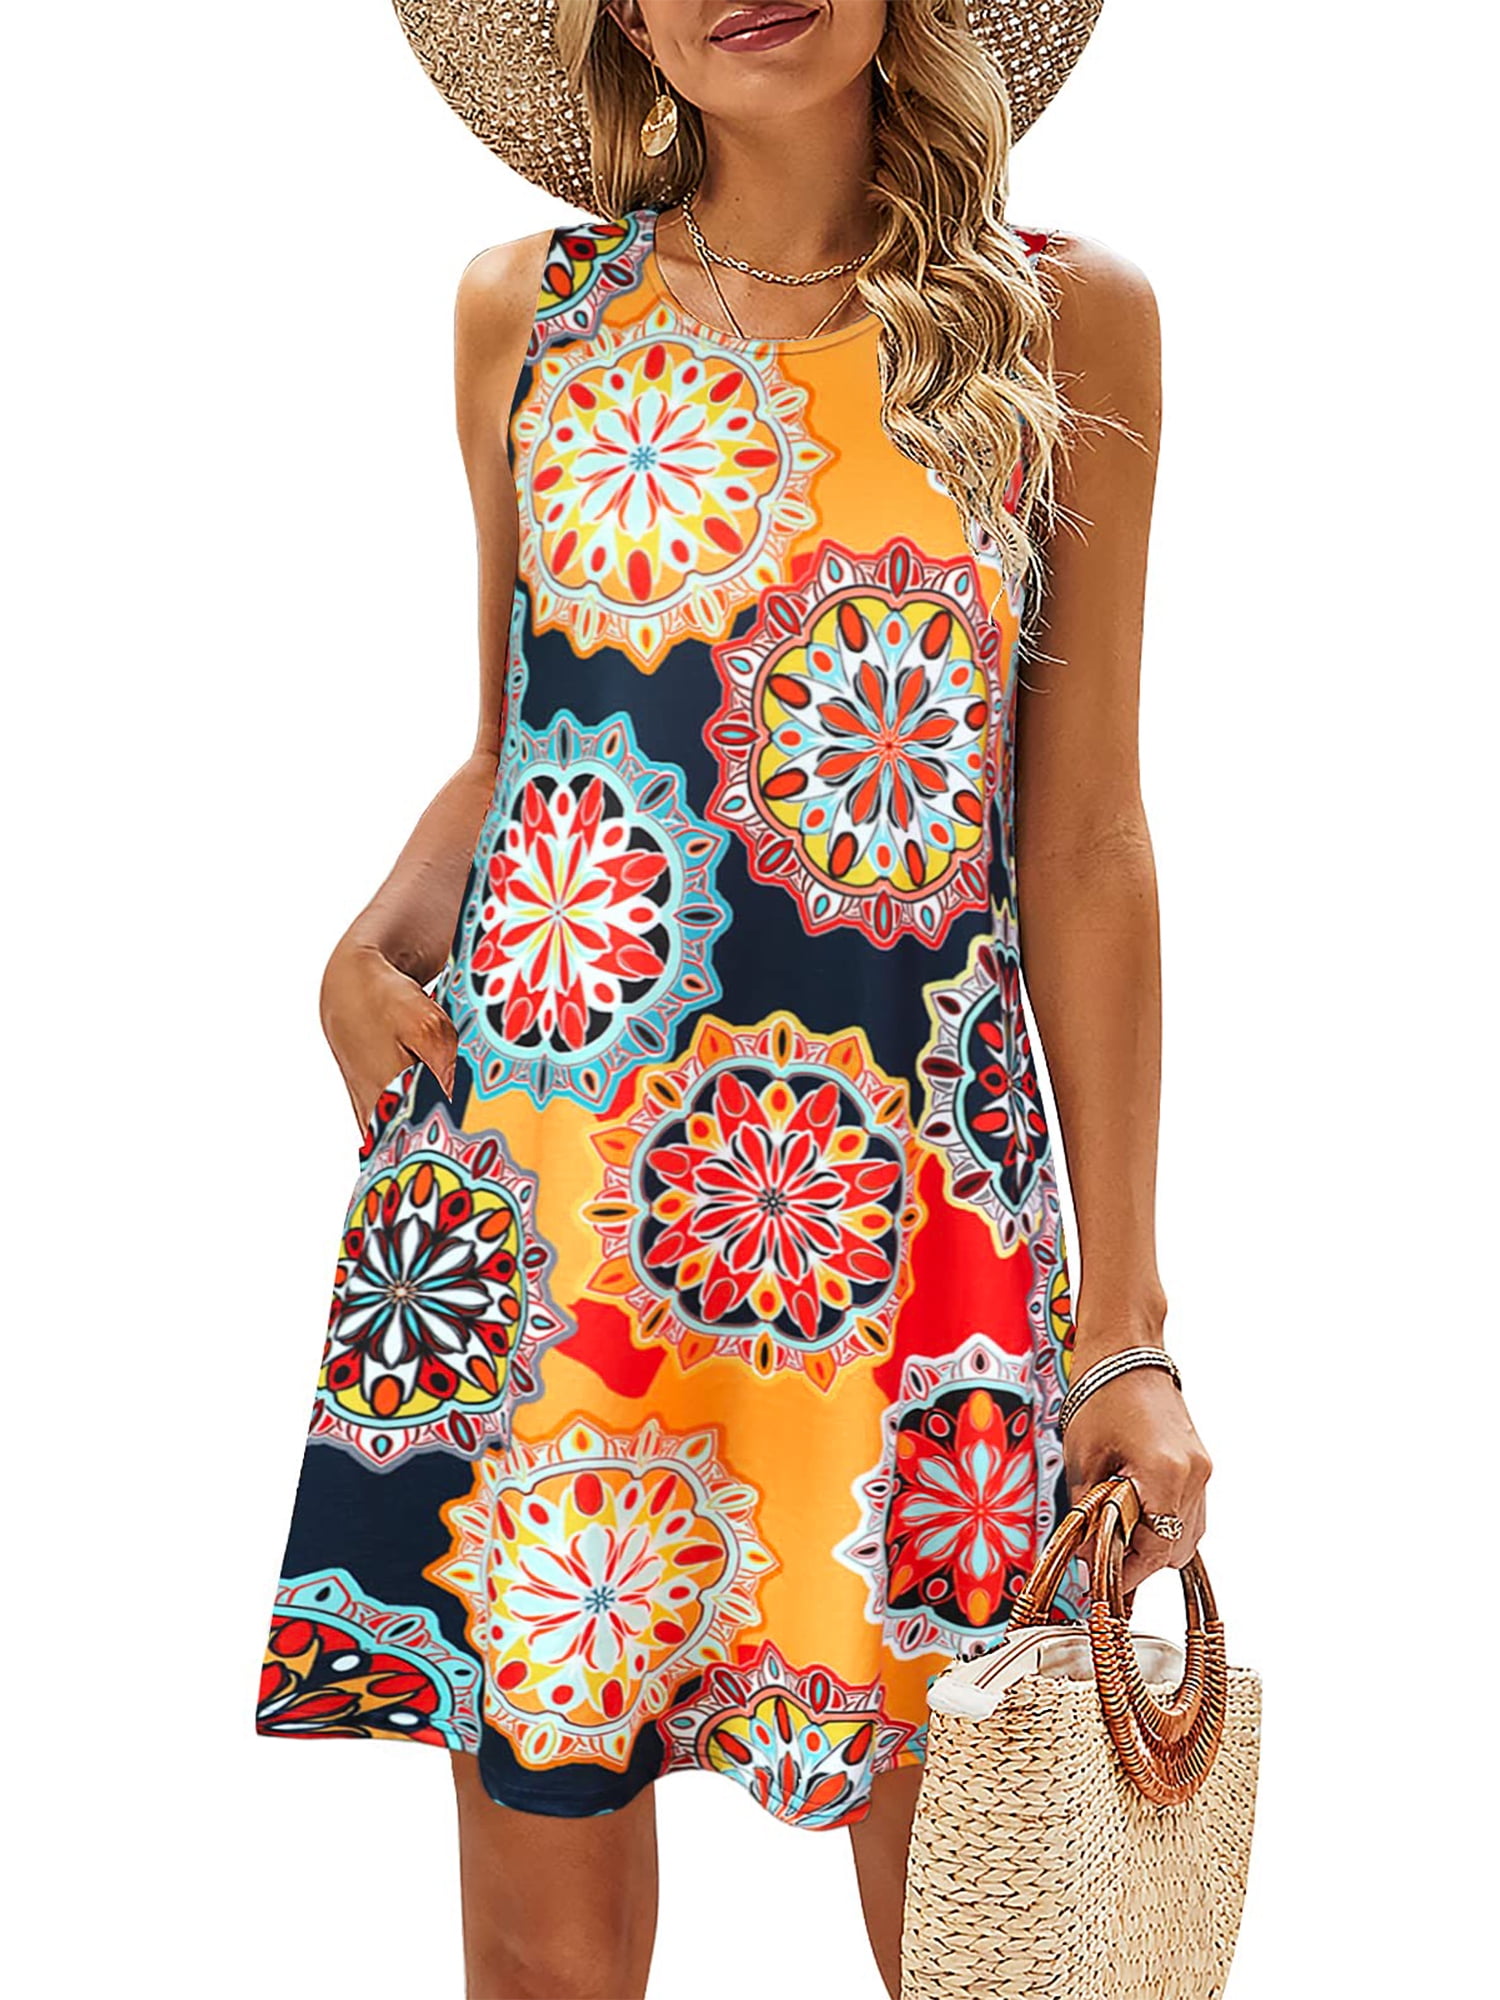 Rivelino Summer Dresses for Women Floral Print Sleeveless Sundresses ...